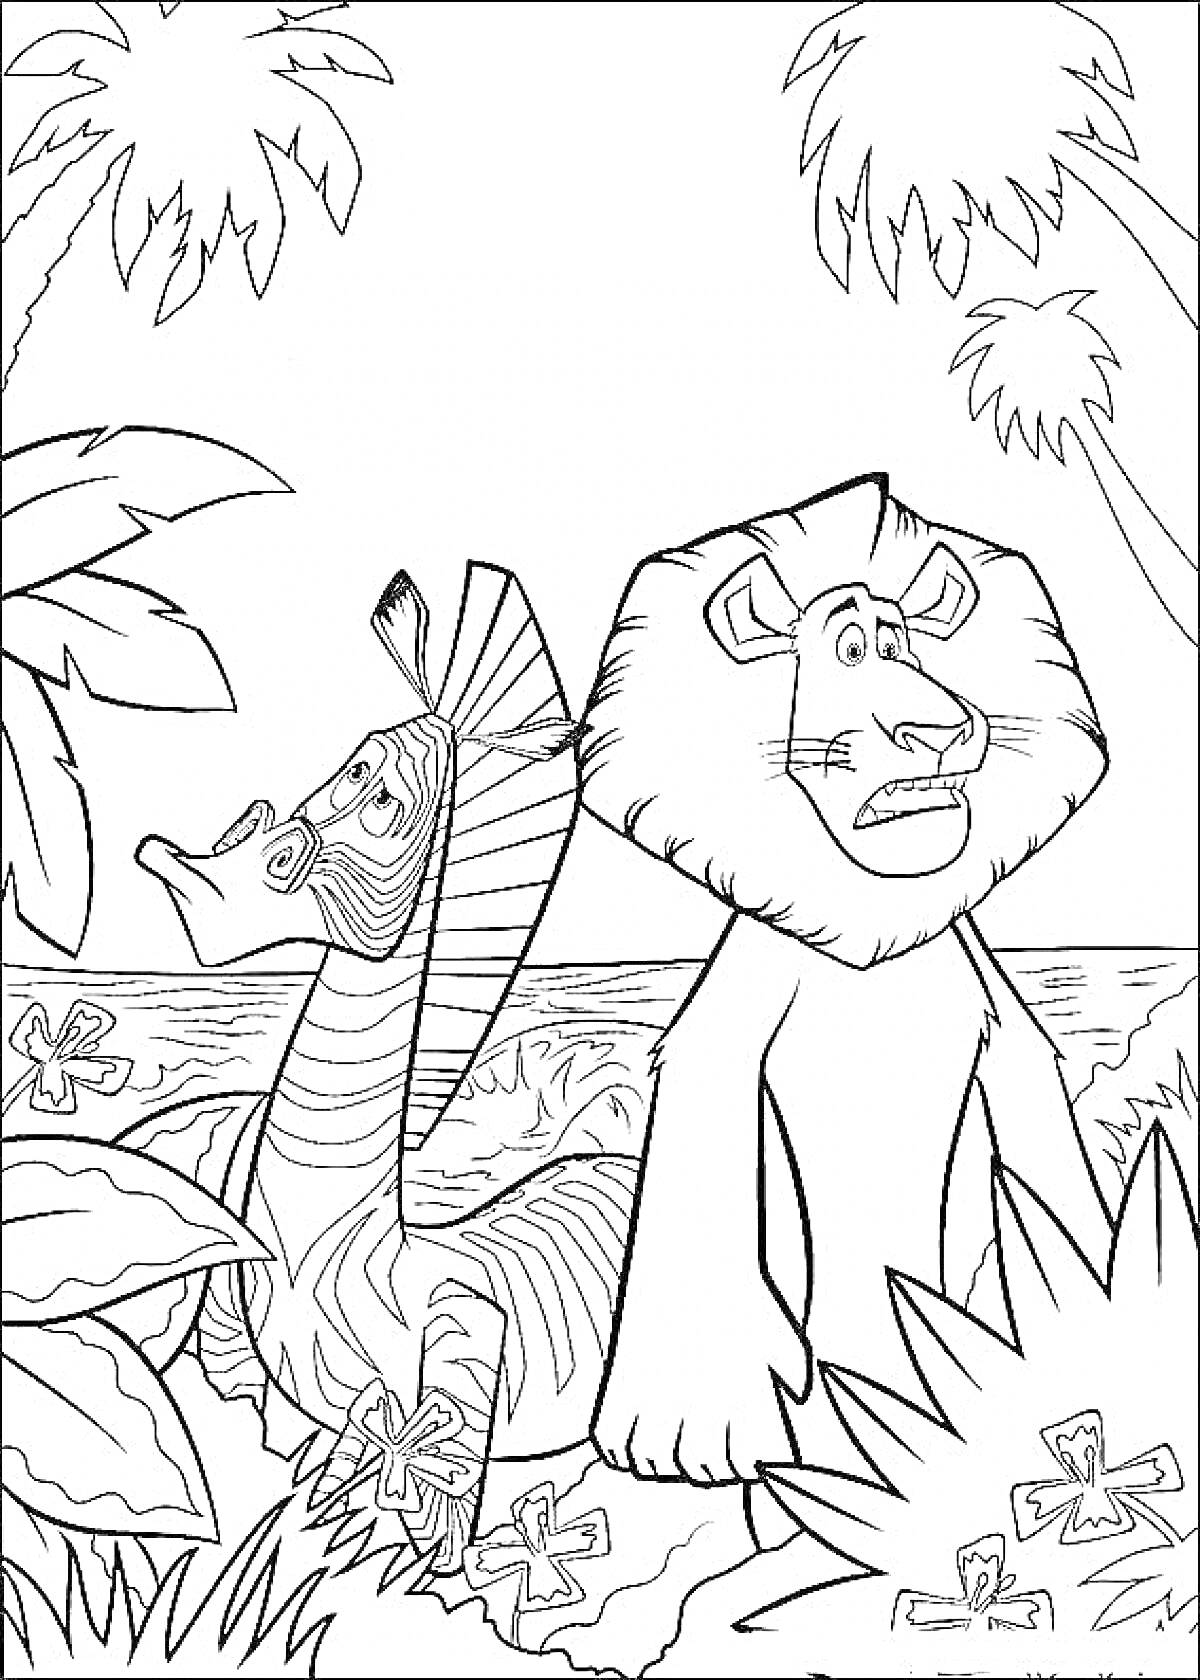 Раскраска Лев и зебра на фоне тропической растительности у моря